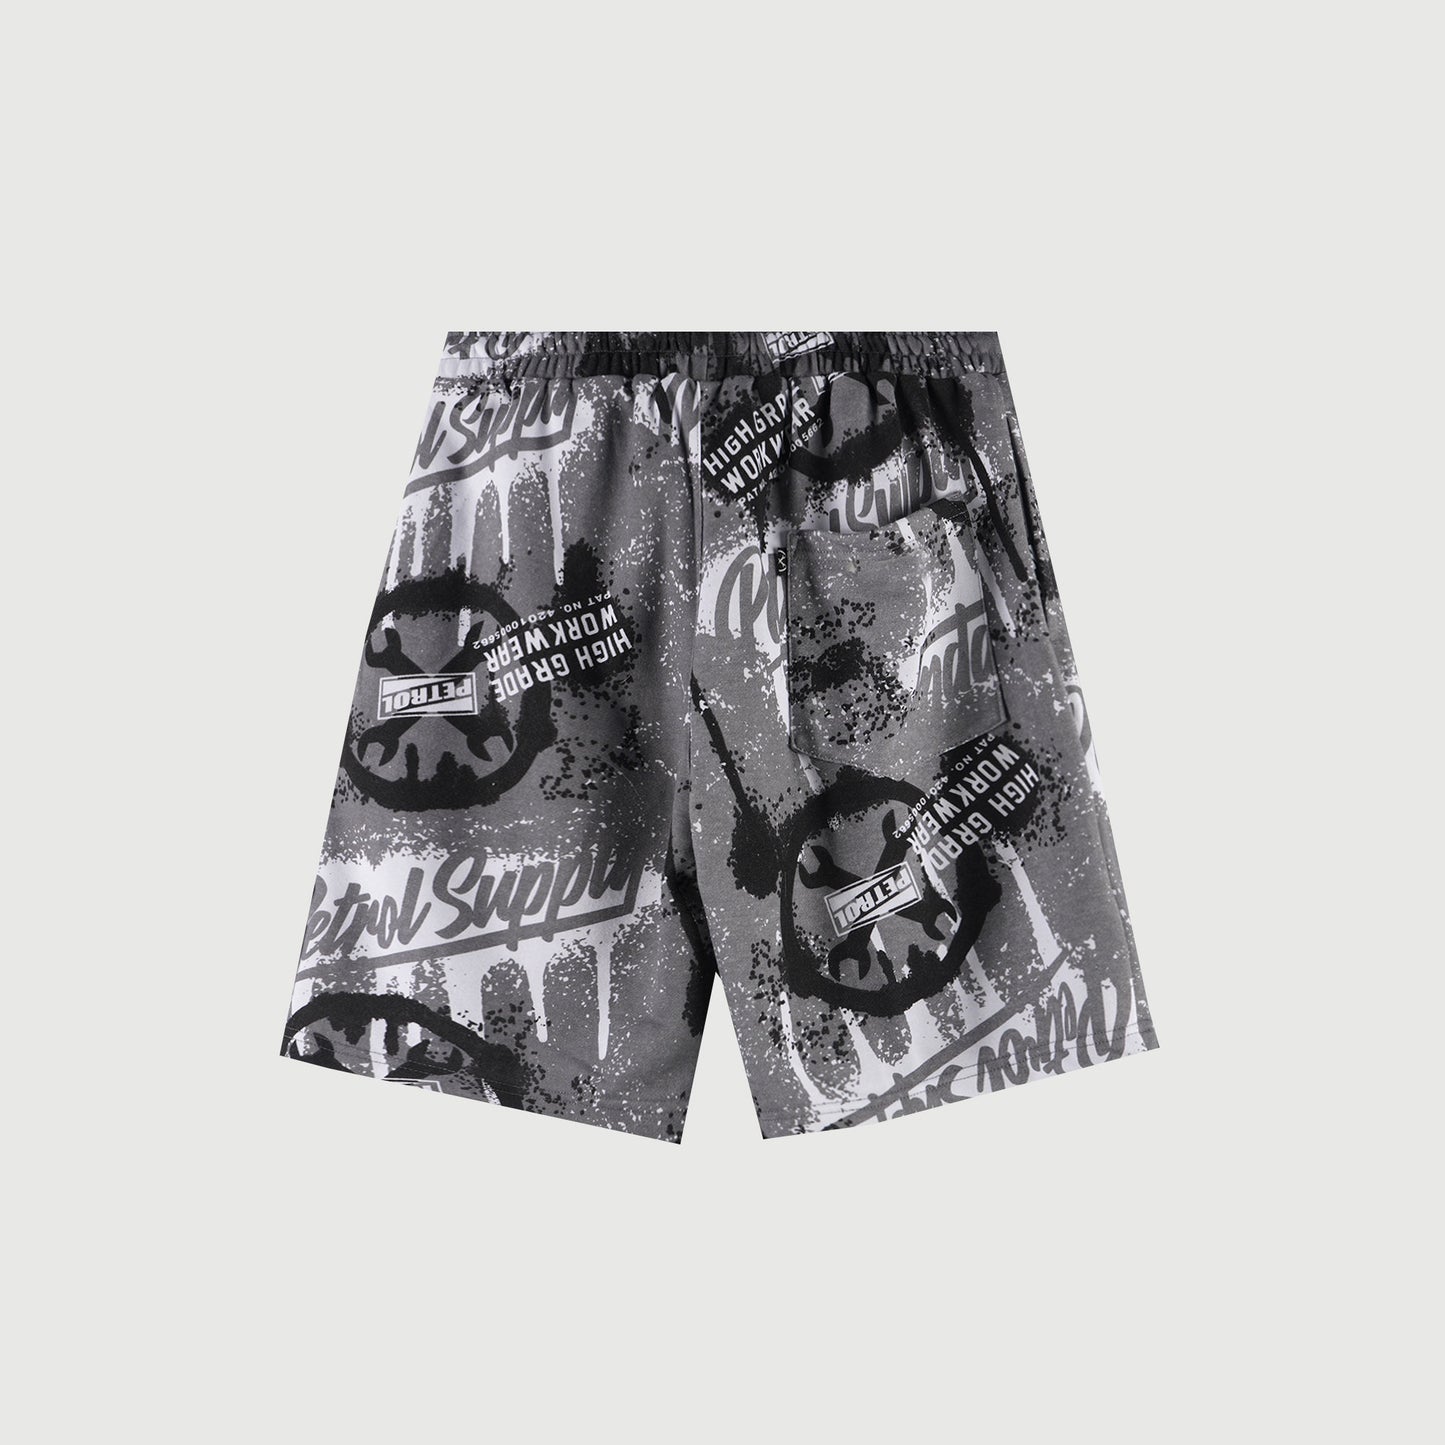 Petrol Basic Non-Denim Jogger Shorts for Men Regular Fitting Garment Wash Fabric Casual short Charcoal Jogger short for Men 117957 (Charcoal)